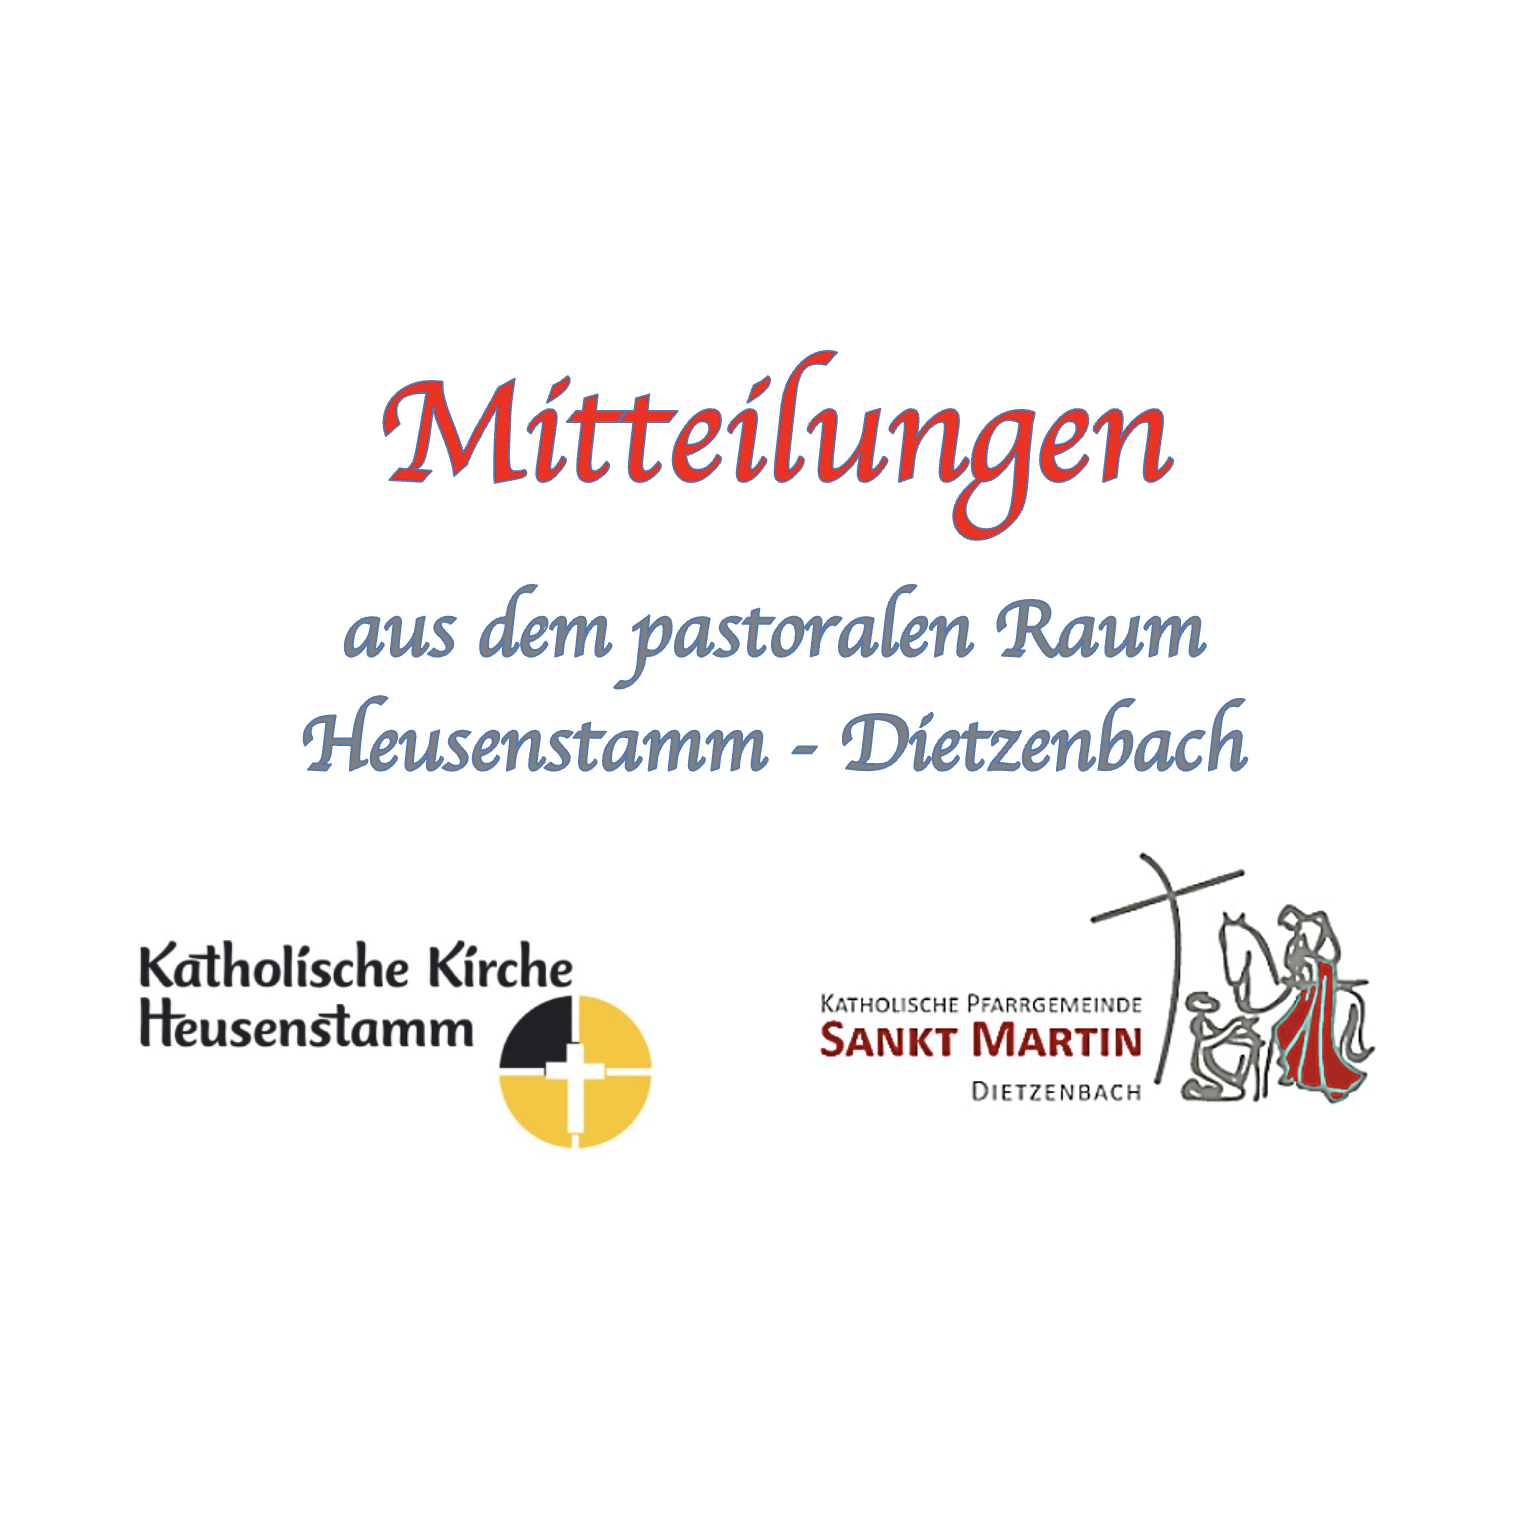 Mitteilungen aus dem pastoralen Raum (c) Pastoralraum Heusenstamm-Dietzenbach